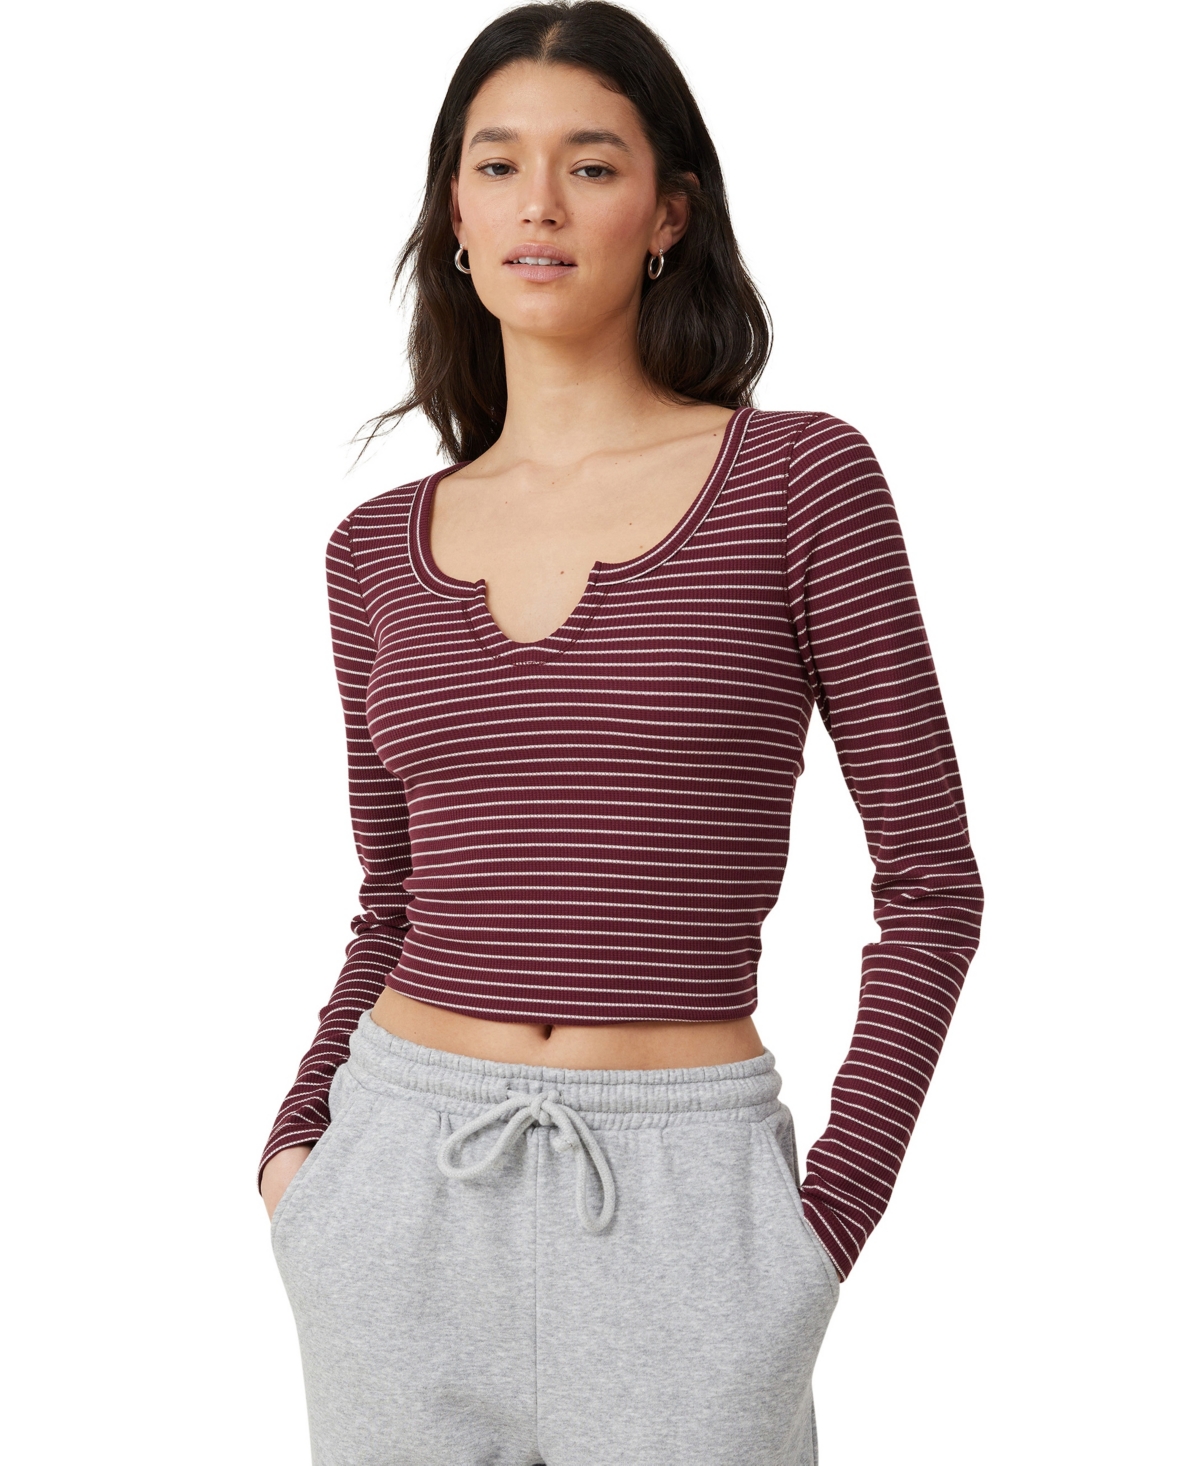 Cotton On Women's Willa Waffle Long Sleeve Top In Chloe Stripe Deep Garnet,wheat